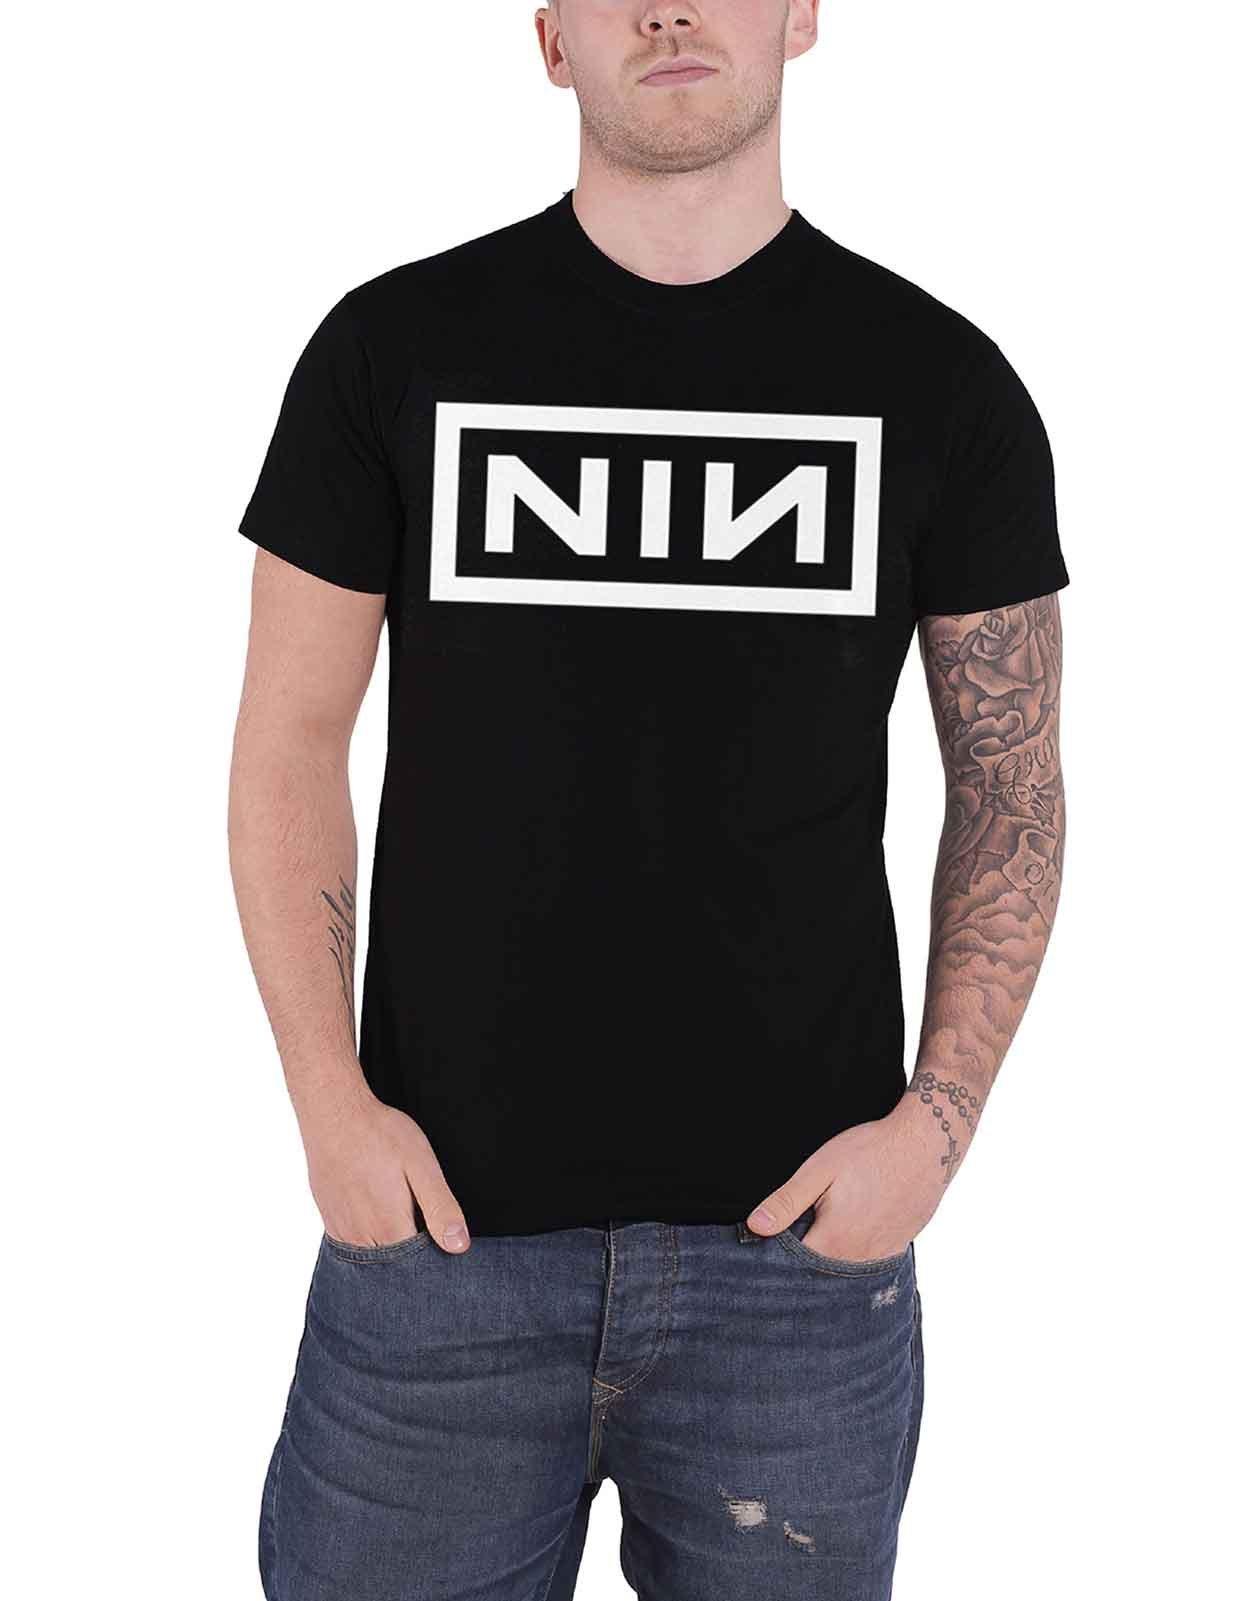 Футболка с логотипом группы Nine Inch Nails, черный